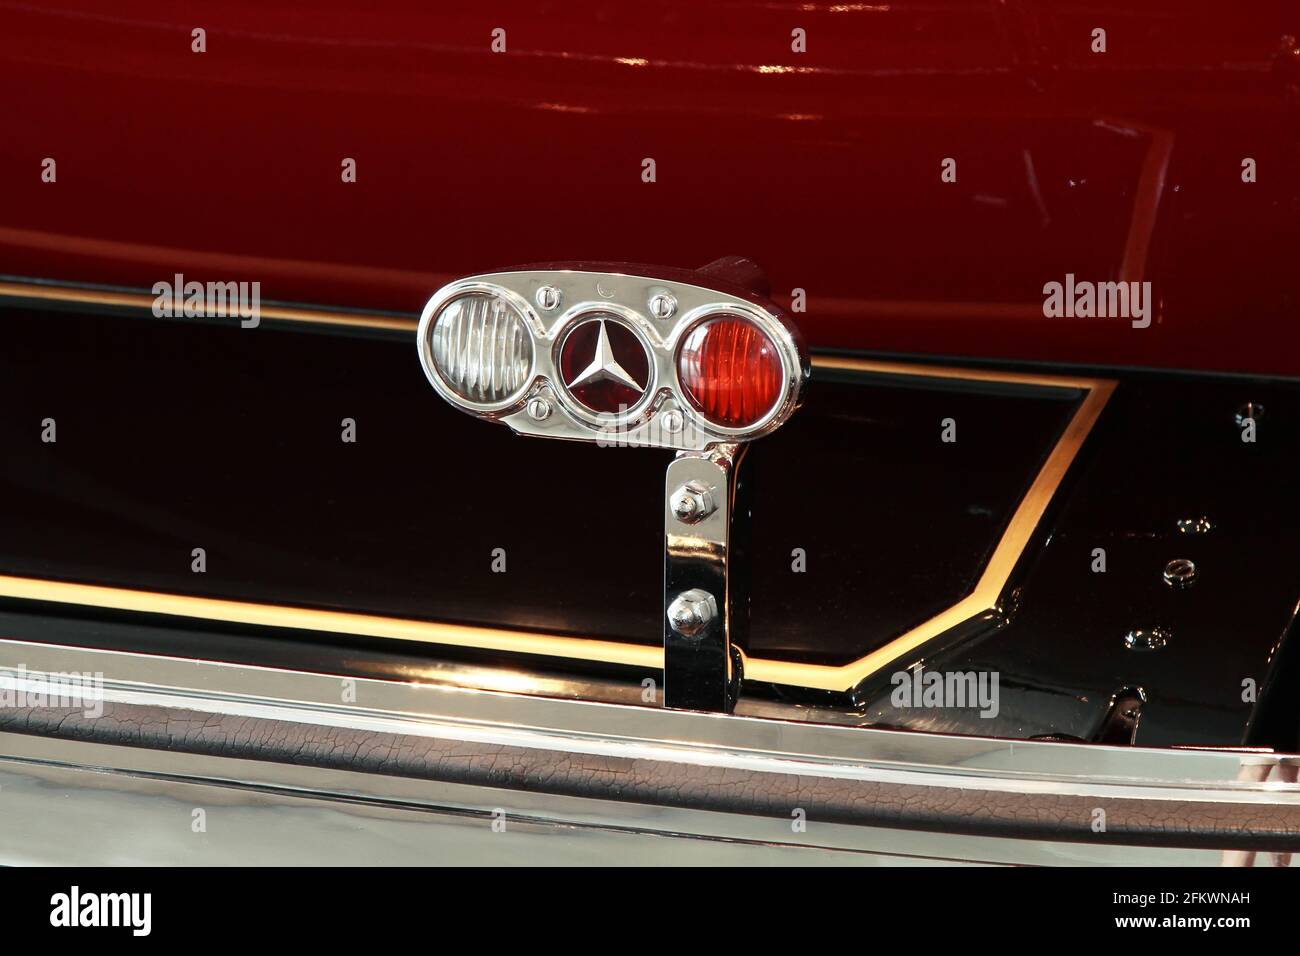 STUTTGART, ALLEMAGNE - 10 JUIN 2018 : exposition permanente du musée automobile Mercedes-Benz. Banque D'Images